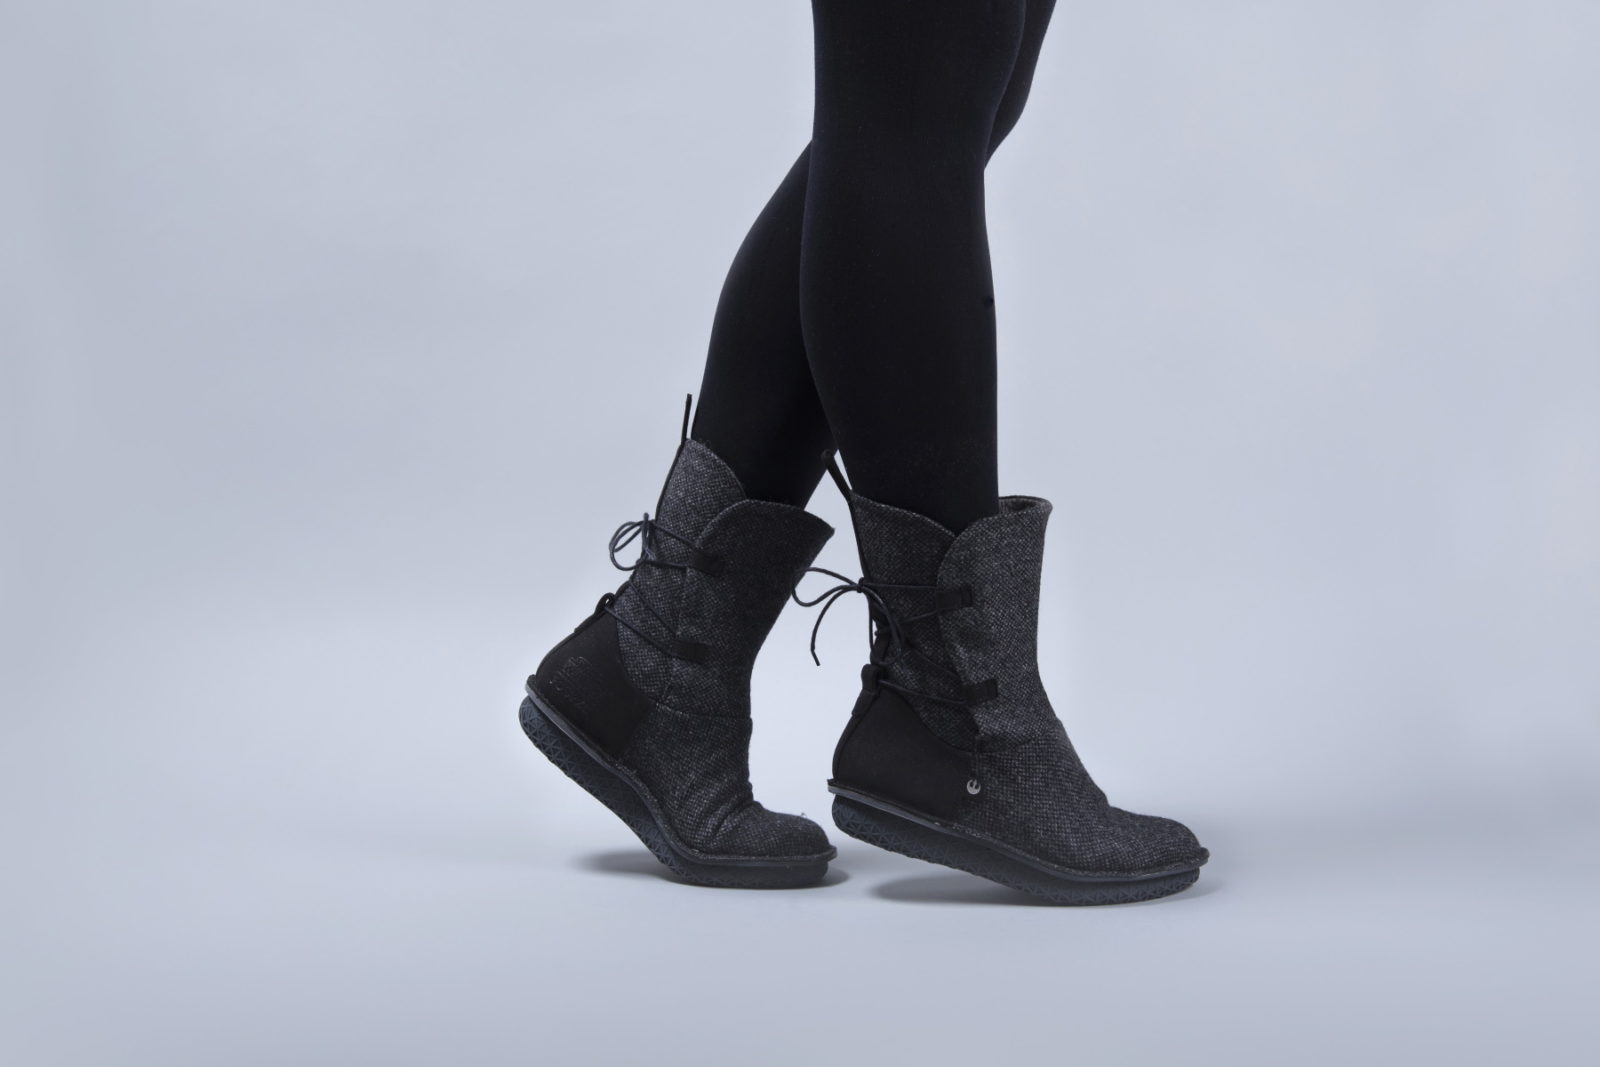 Po-Zu x Star Wars Rey Black Tweed Boots